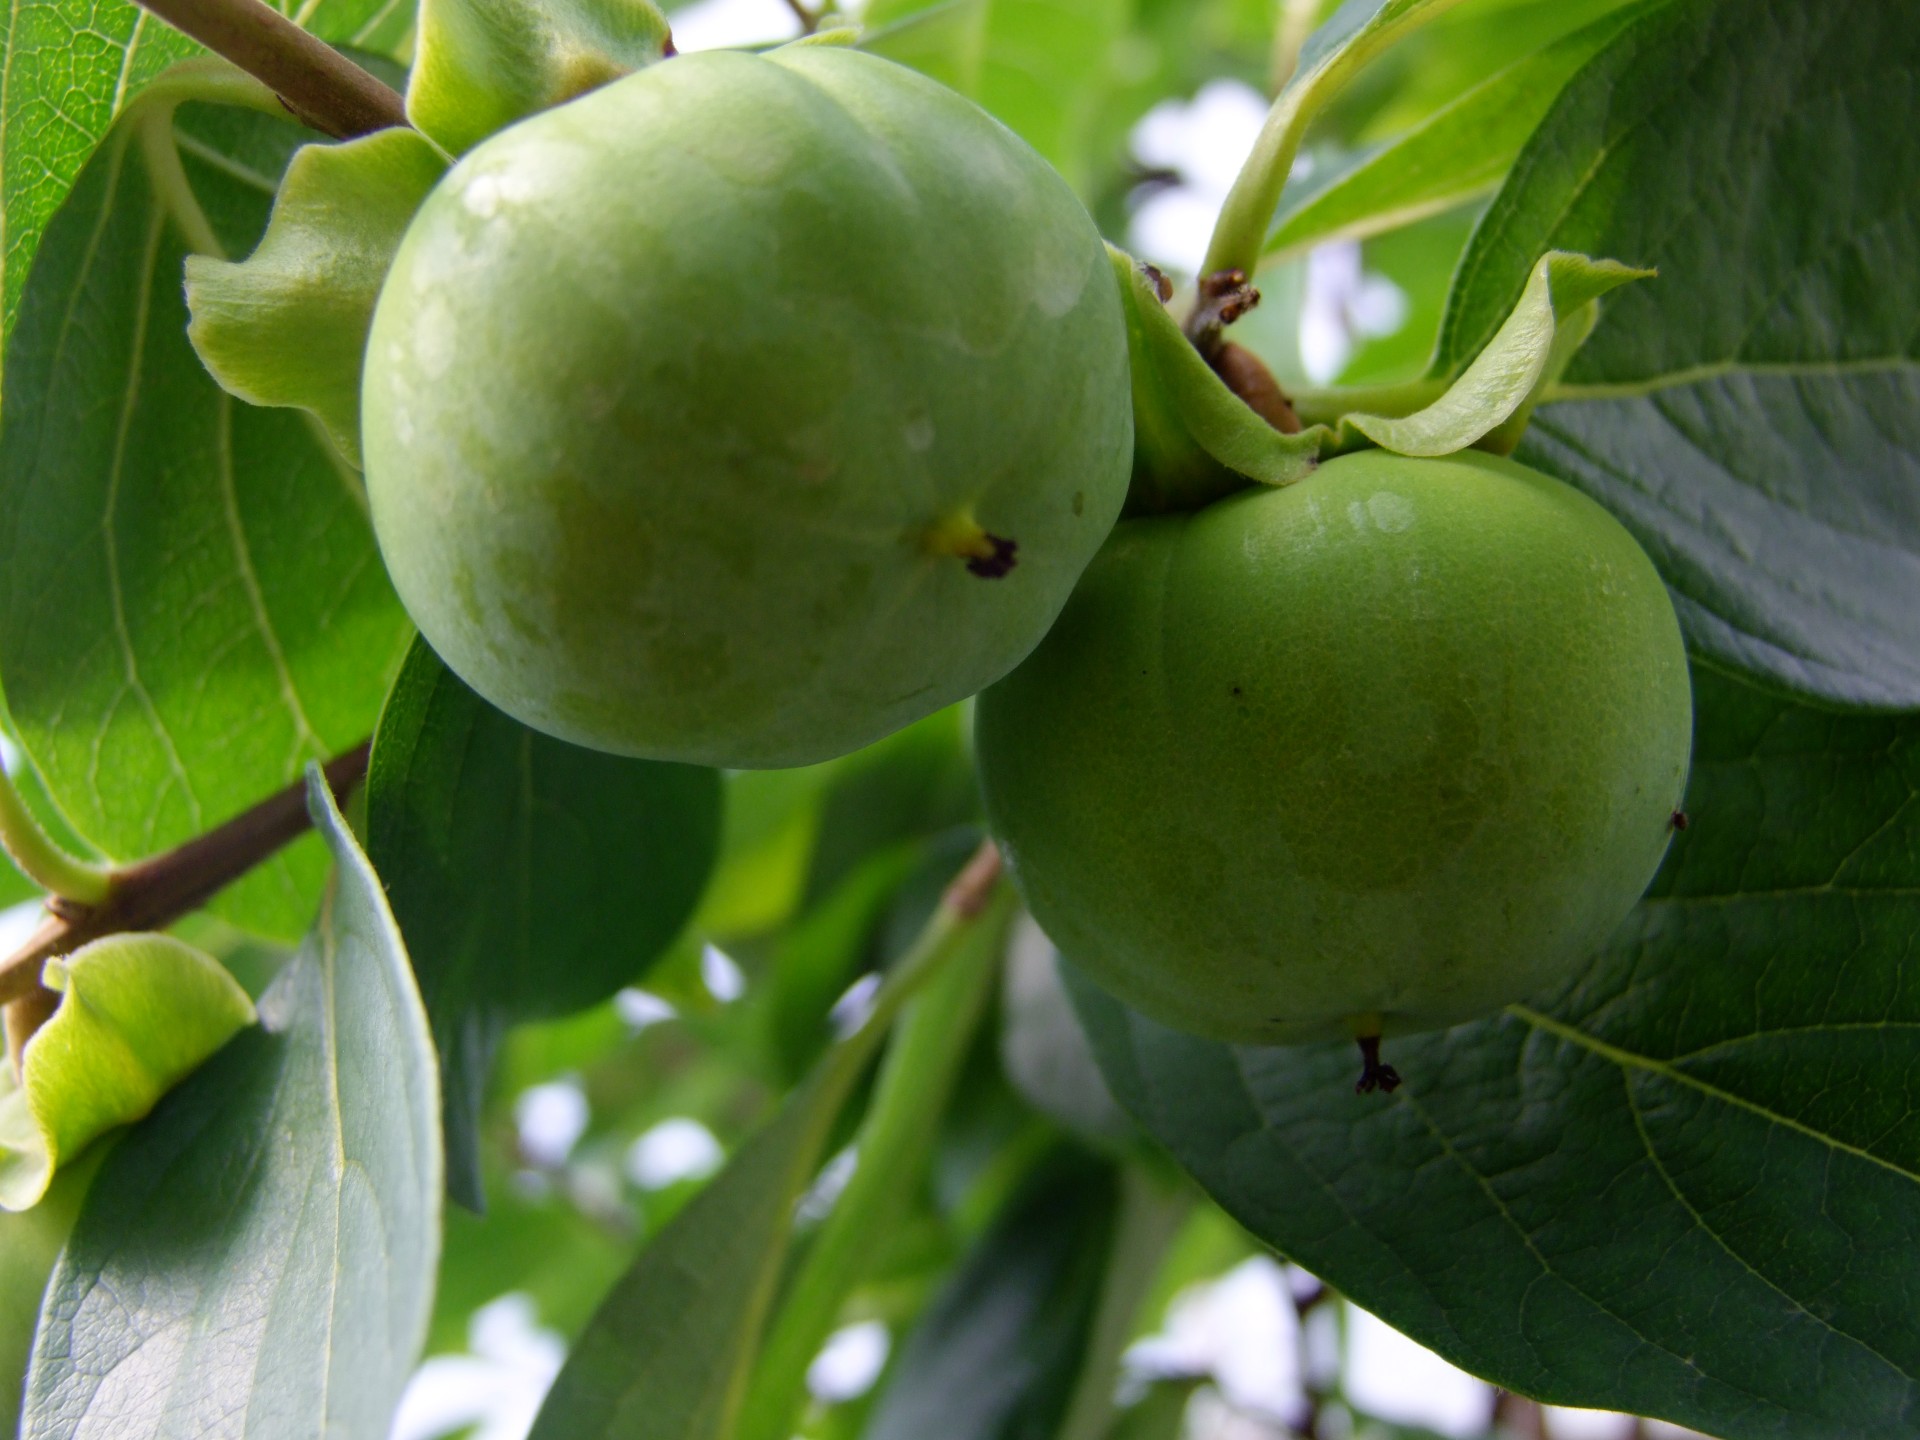 Kaki.Kaki. Le kaki, également appelé plaquemine ou figue caque, est un fruit qui ressemble à une grosse tomate, à la peau lisse, et de couleur orange vif à rouge selon les variétés et le degré de maturité. Il est originaire de l'est de la Chine, et il est le fruit national de la Corée et du Japon, où il est très cultivé et consommé.